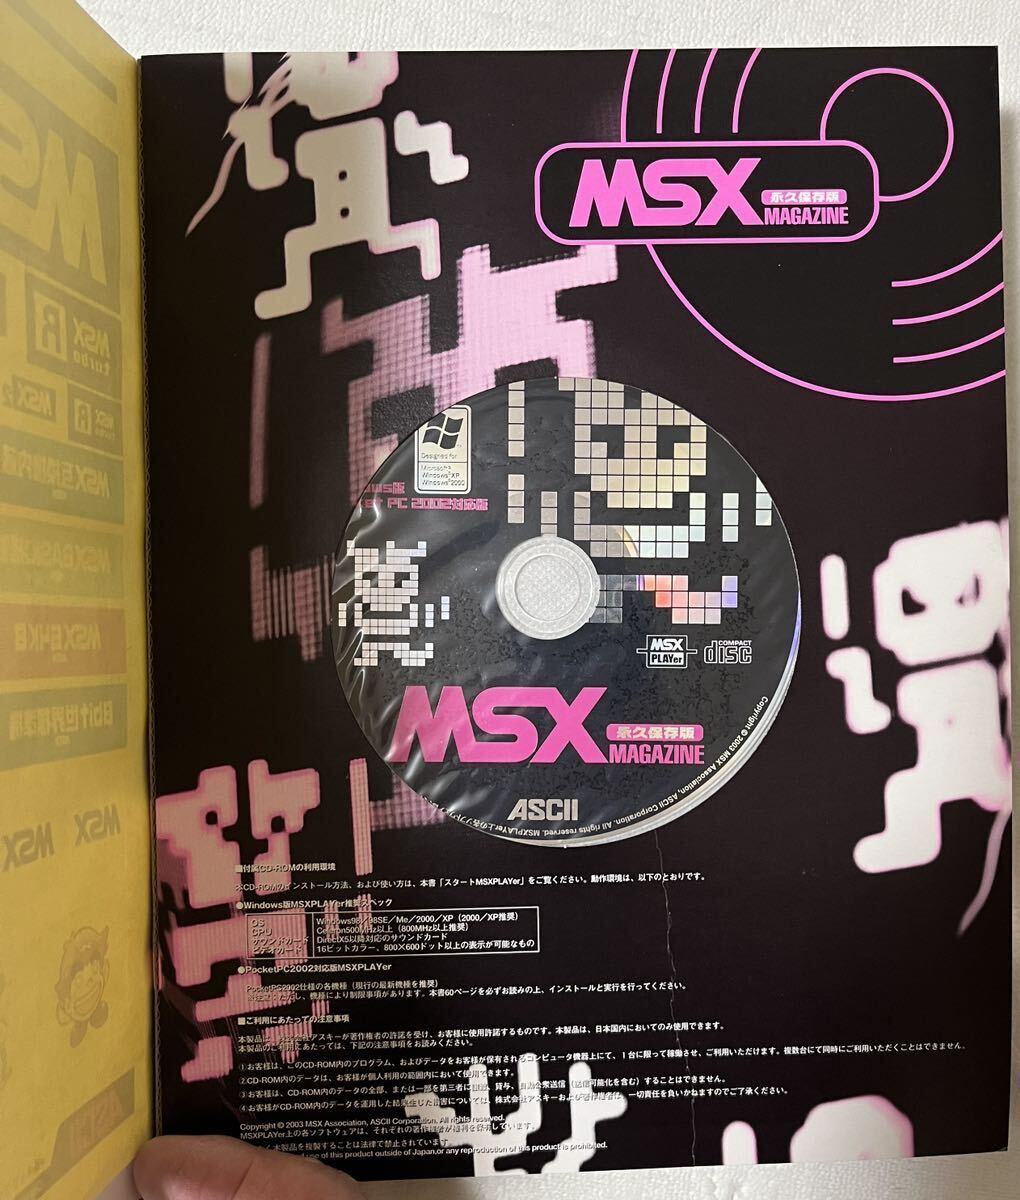 [ долгосрочный сохранение версия MSX журнал ][Beep переиздание ][ge-sen сильнейший читатель ][ ежемесячный ASCII199 год 12 месяц специальный дополнение переиздание AhSKI!]